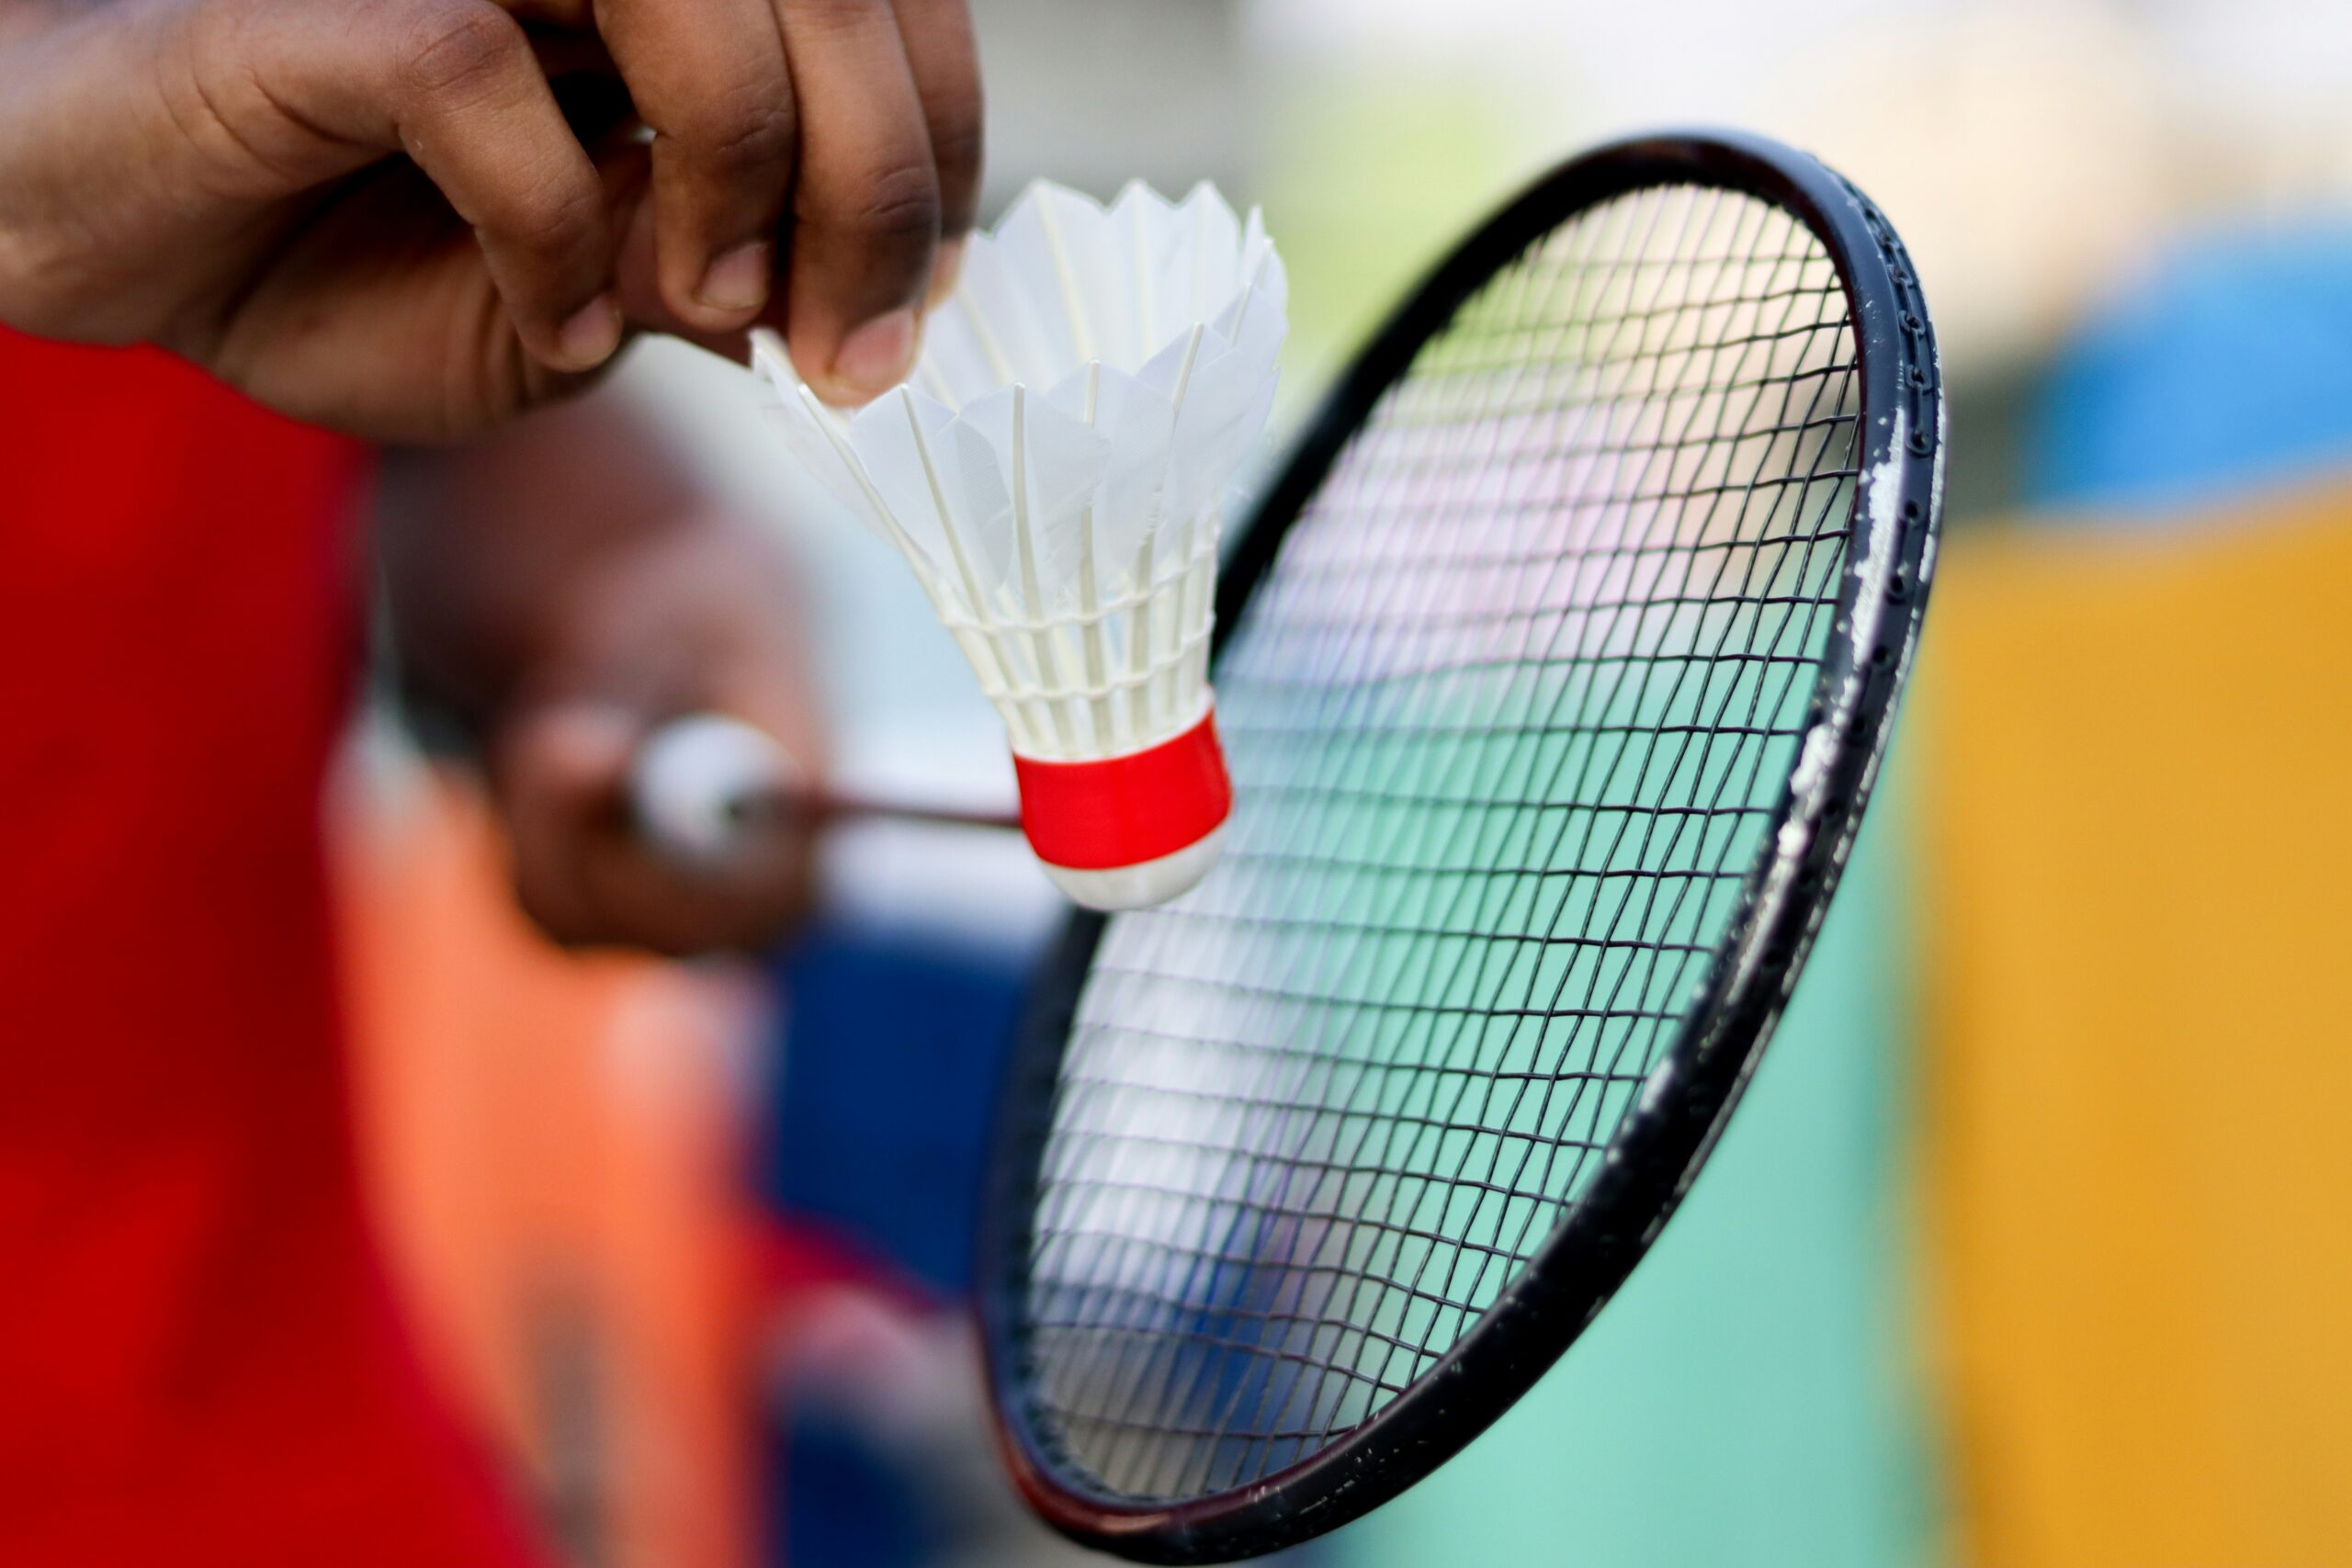 découvrez tout sur le badminton, ses règles, ses techniques et les meilleurs équipements pour pratiquer ce sport passionnant.